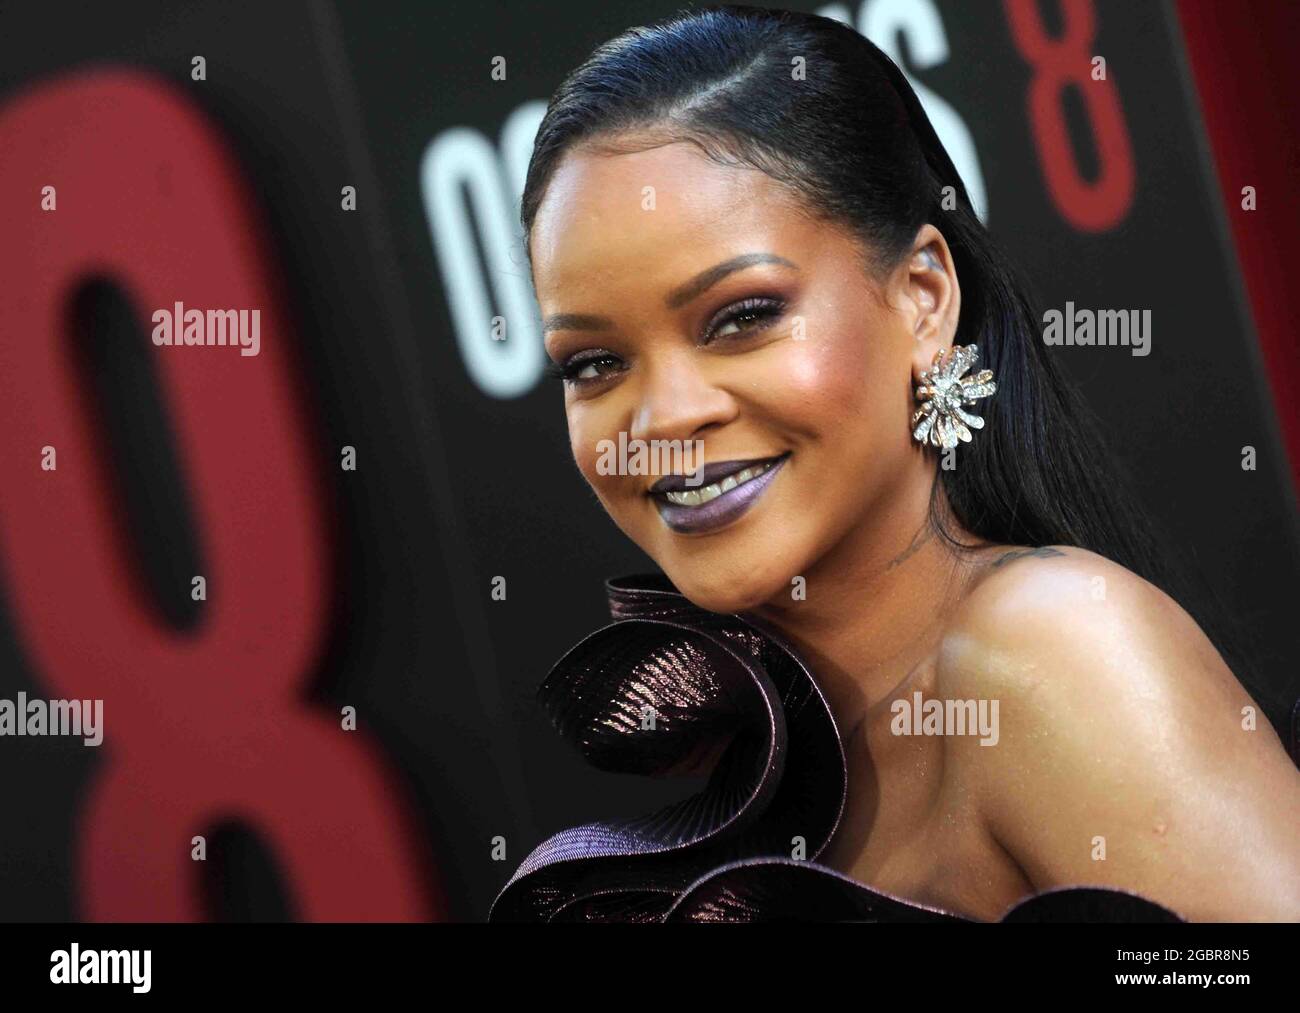 Datei-Foto vom 5. Juni 2018 von Rihanna bei der Weltpremiere von Ocean's 8 in der Alice Tully Hall im Lincoln Center in New York City, NY, USA. Robyn 'Rihanna' Fenty ist laut Forbes offiziell Milliardär. Das Wirtschaftsmagazin, das Daten über die wohlhabendsten Menschen der Welt aufzeichnet und veröffentlicht, berichtete am Mittwoch, dass der 33-jährige Popstar einen Nettowert von 1.7 Milliarden US-Dollar schätzte, was sie zur wohlhabendsten Musikerin und zweitreichsten Frau in der Unterhaltung hinter Oprah Winfrey macht. Foto von Dennis van Tine/ABACAPRESS.COM Stockfoto